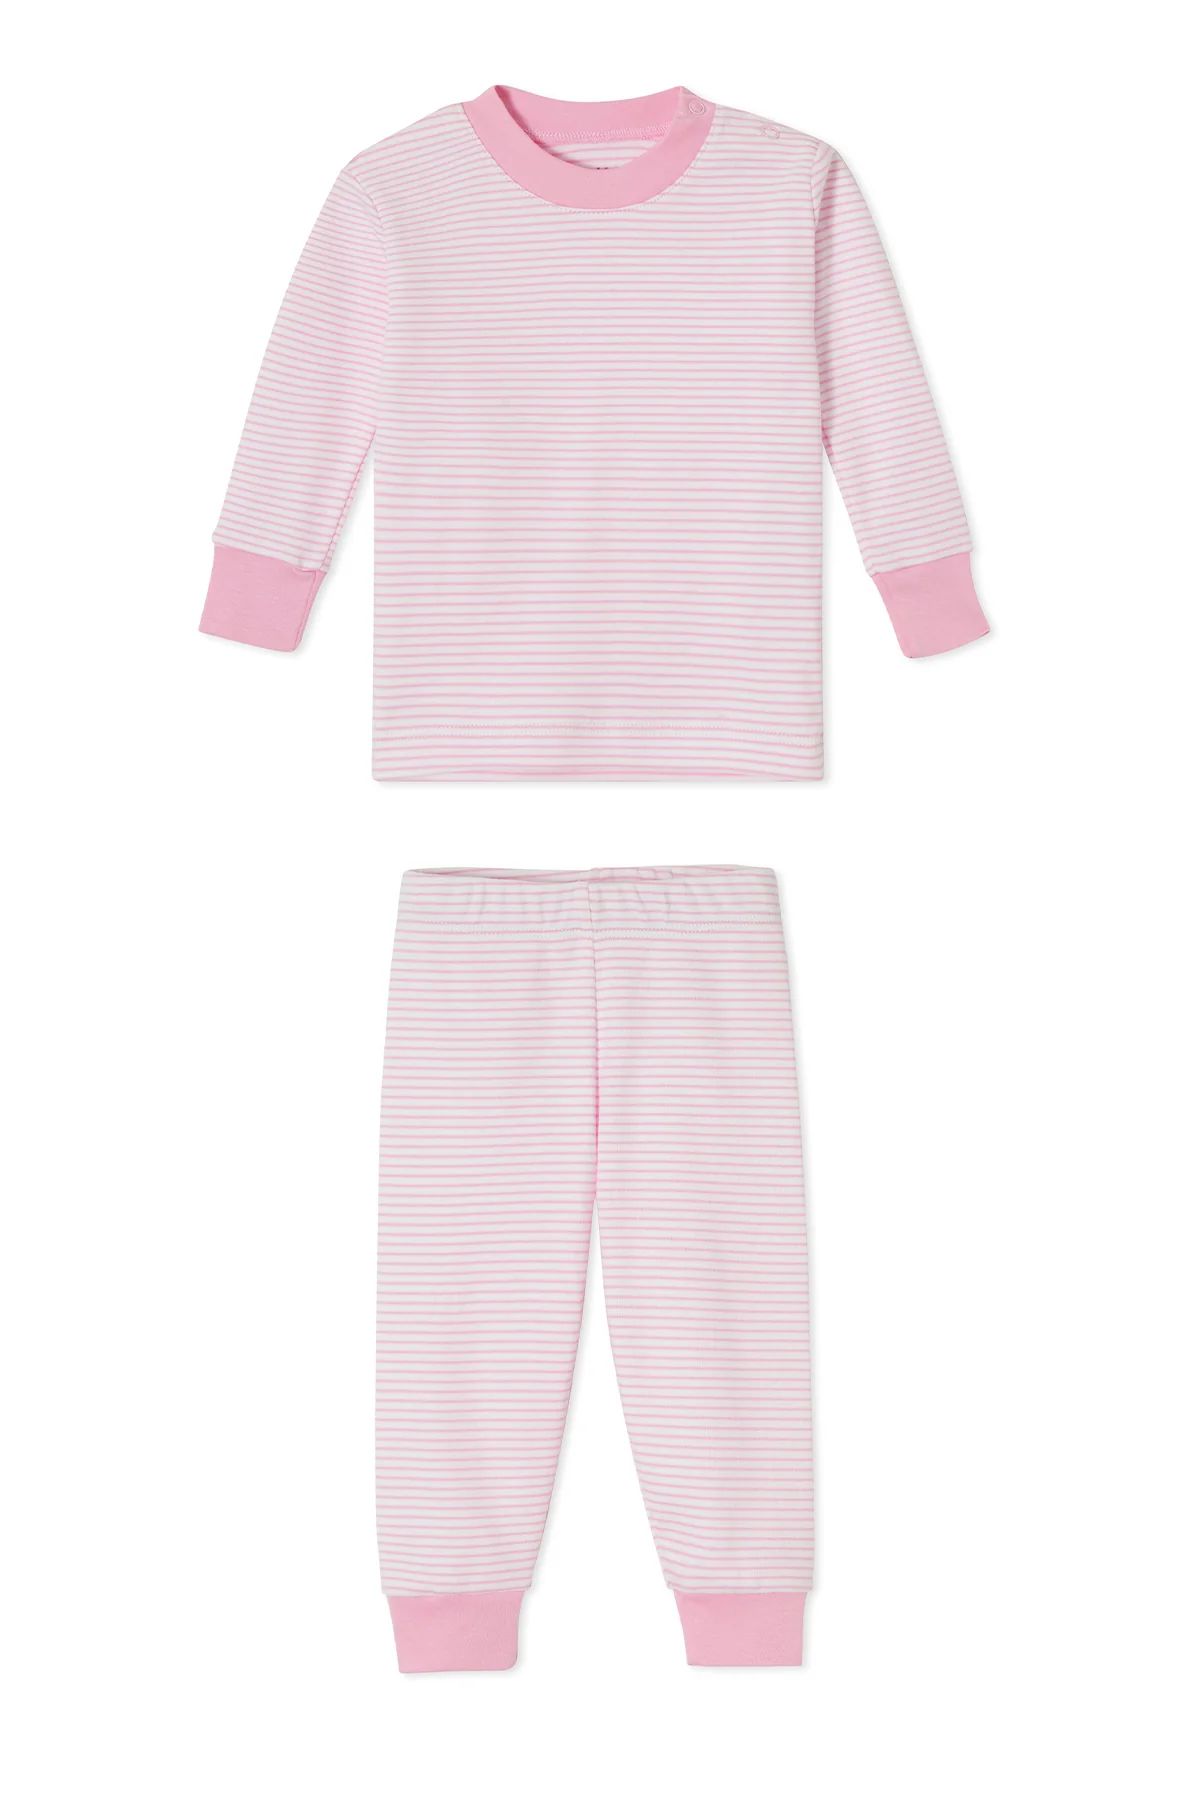 Baby Long-Long Set in Lily | LAKE Pajamas